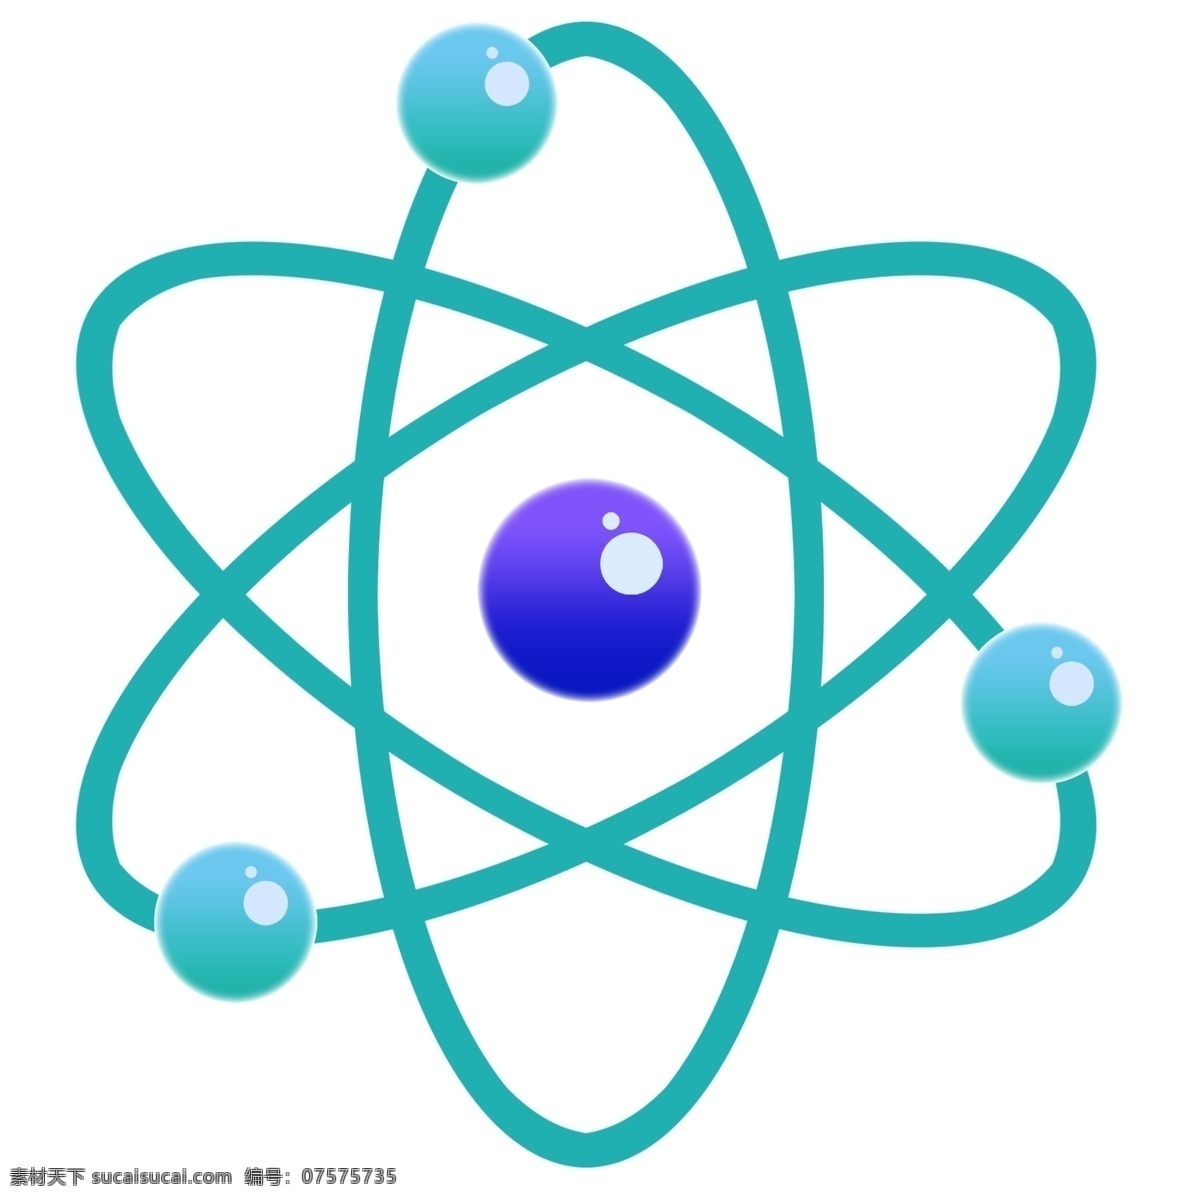 矢量图 原子 结构图 绿色 线条 不规则图形 蓝色 流畅 化学 分子结构图